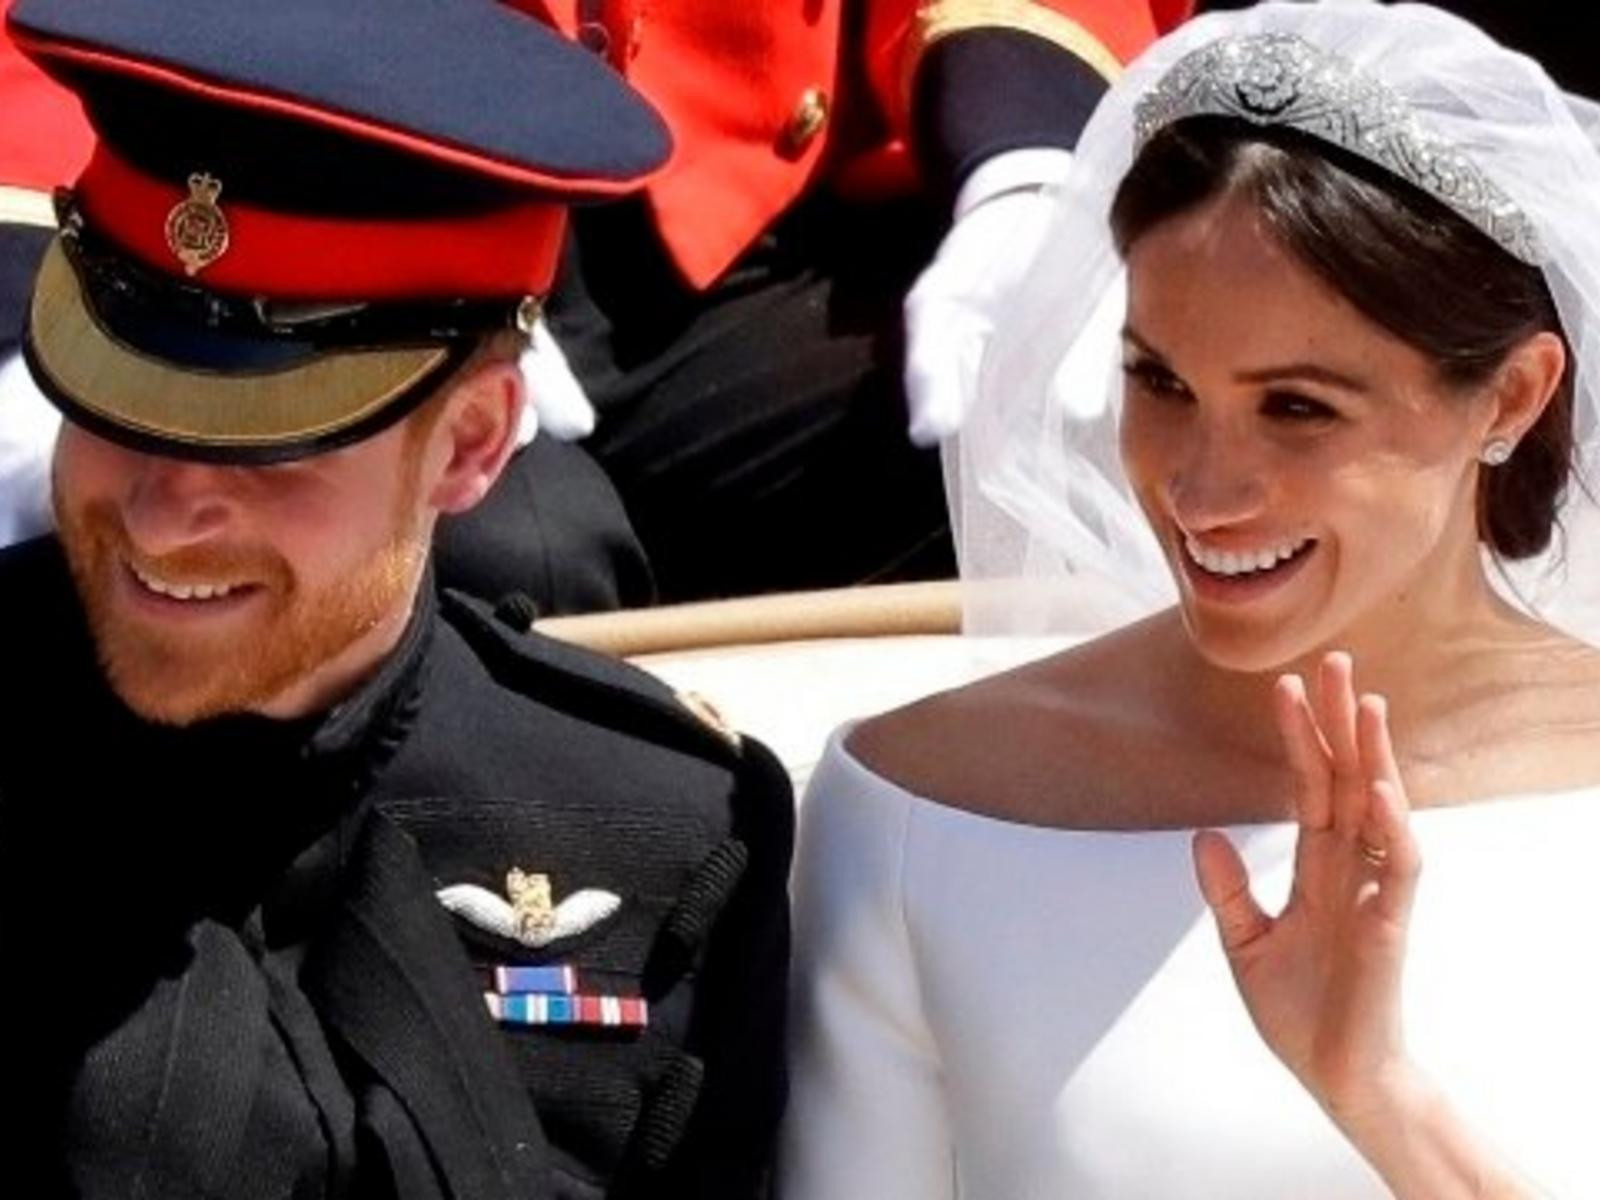 Bilder Hochzeit Prinz Harry
 Royal Wedding Prinz Harry und Meghan Markle – Die Bilder